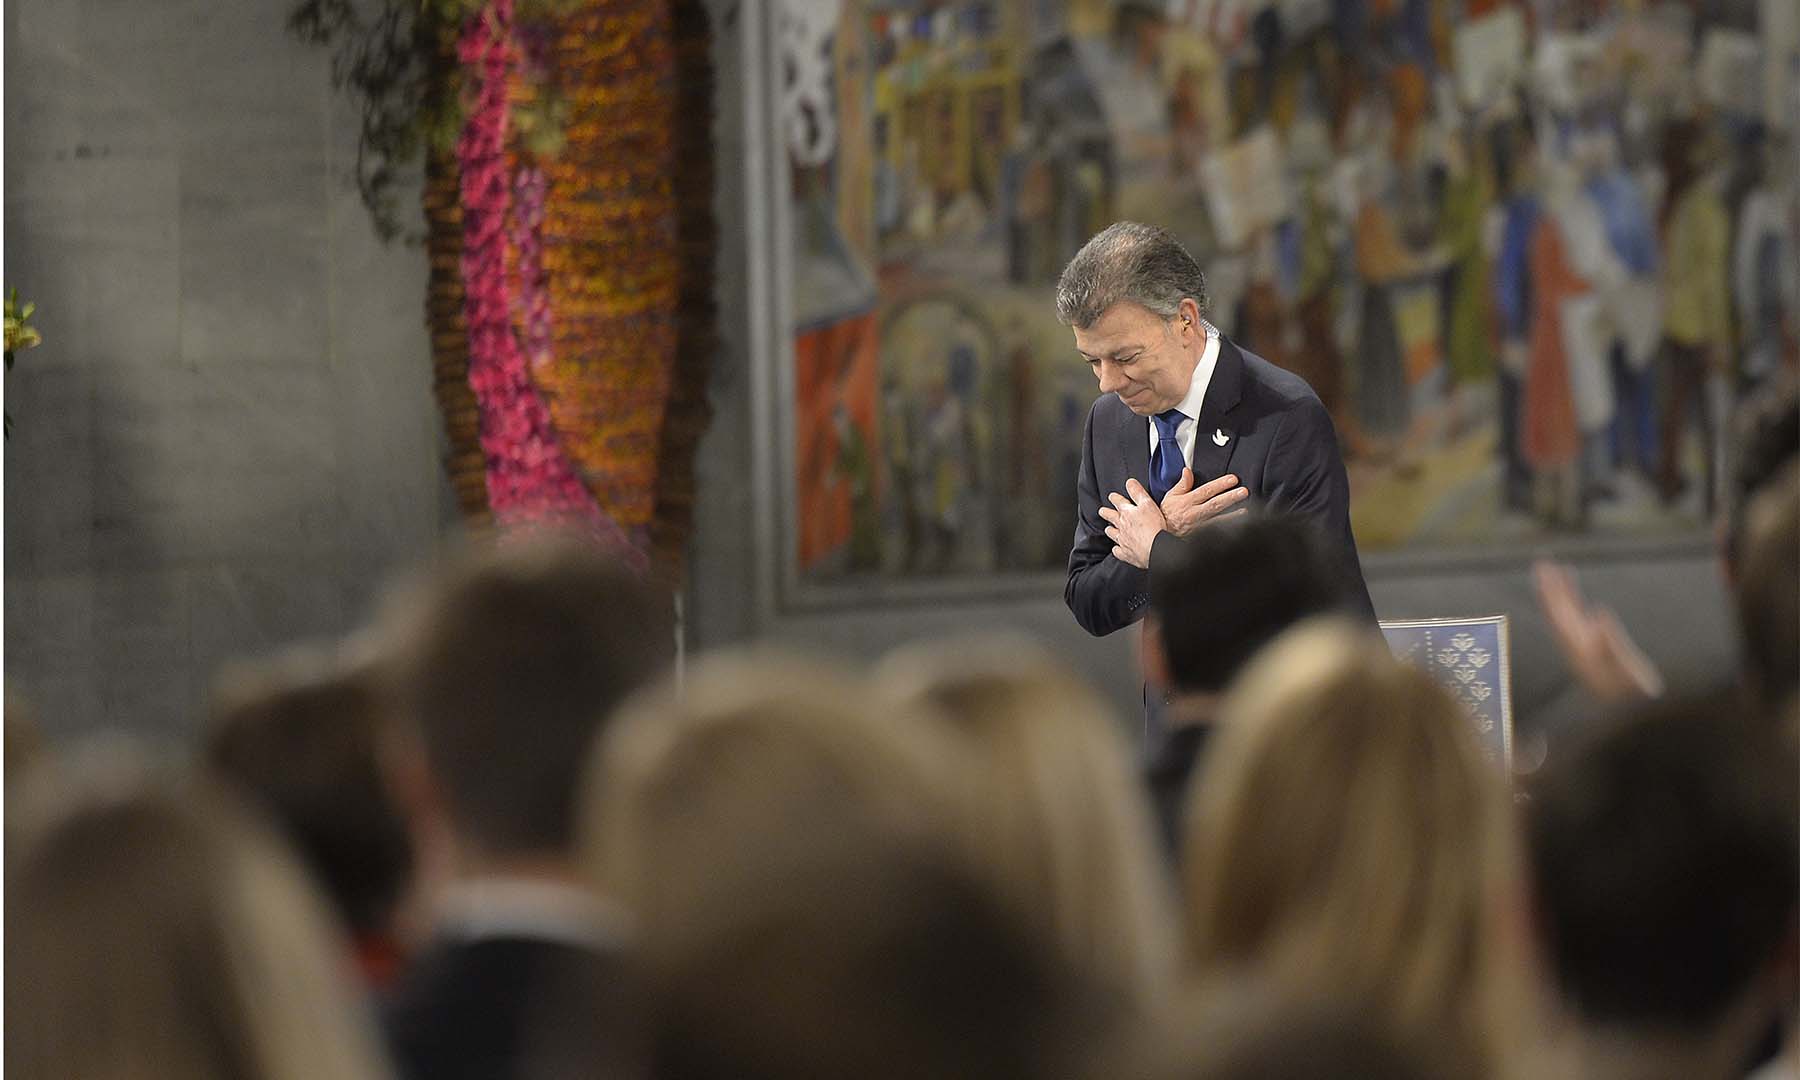 El Presidente Juan Manuel Santos recibe una ovación en Oslo luego de recibir el Premio Nobel de Paz 2016, por su incansable esfuerzo por llevar la reconciliación a los colombianos.